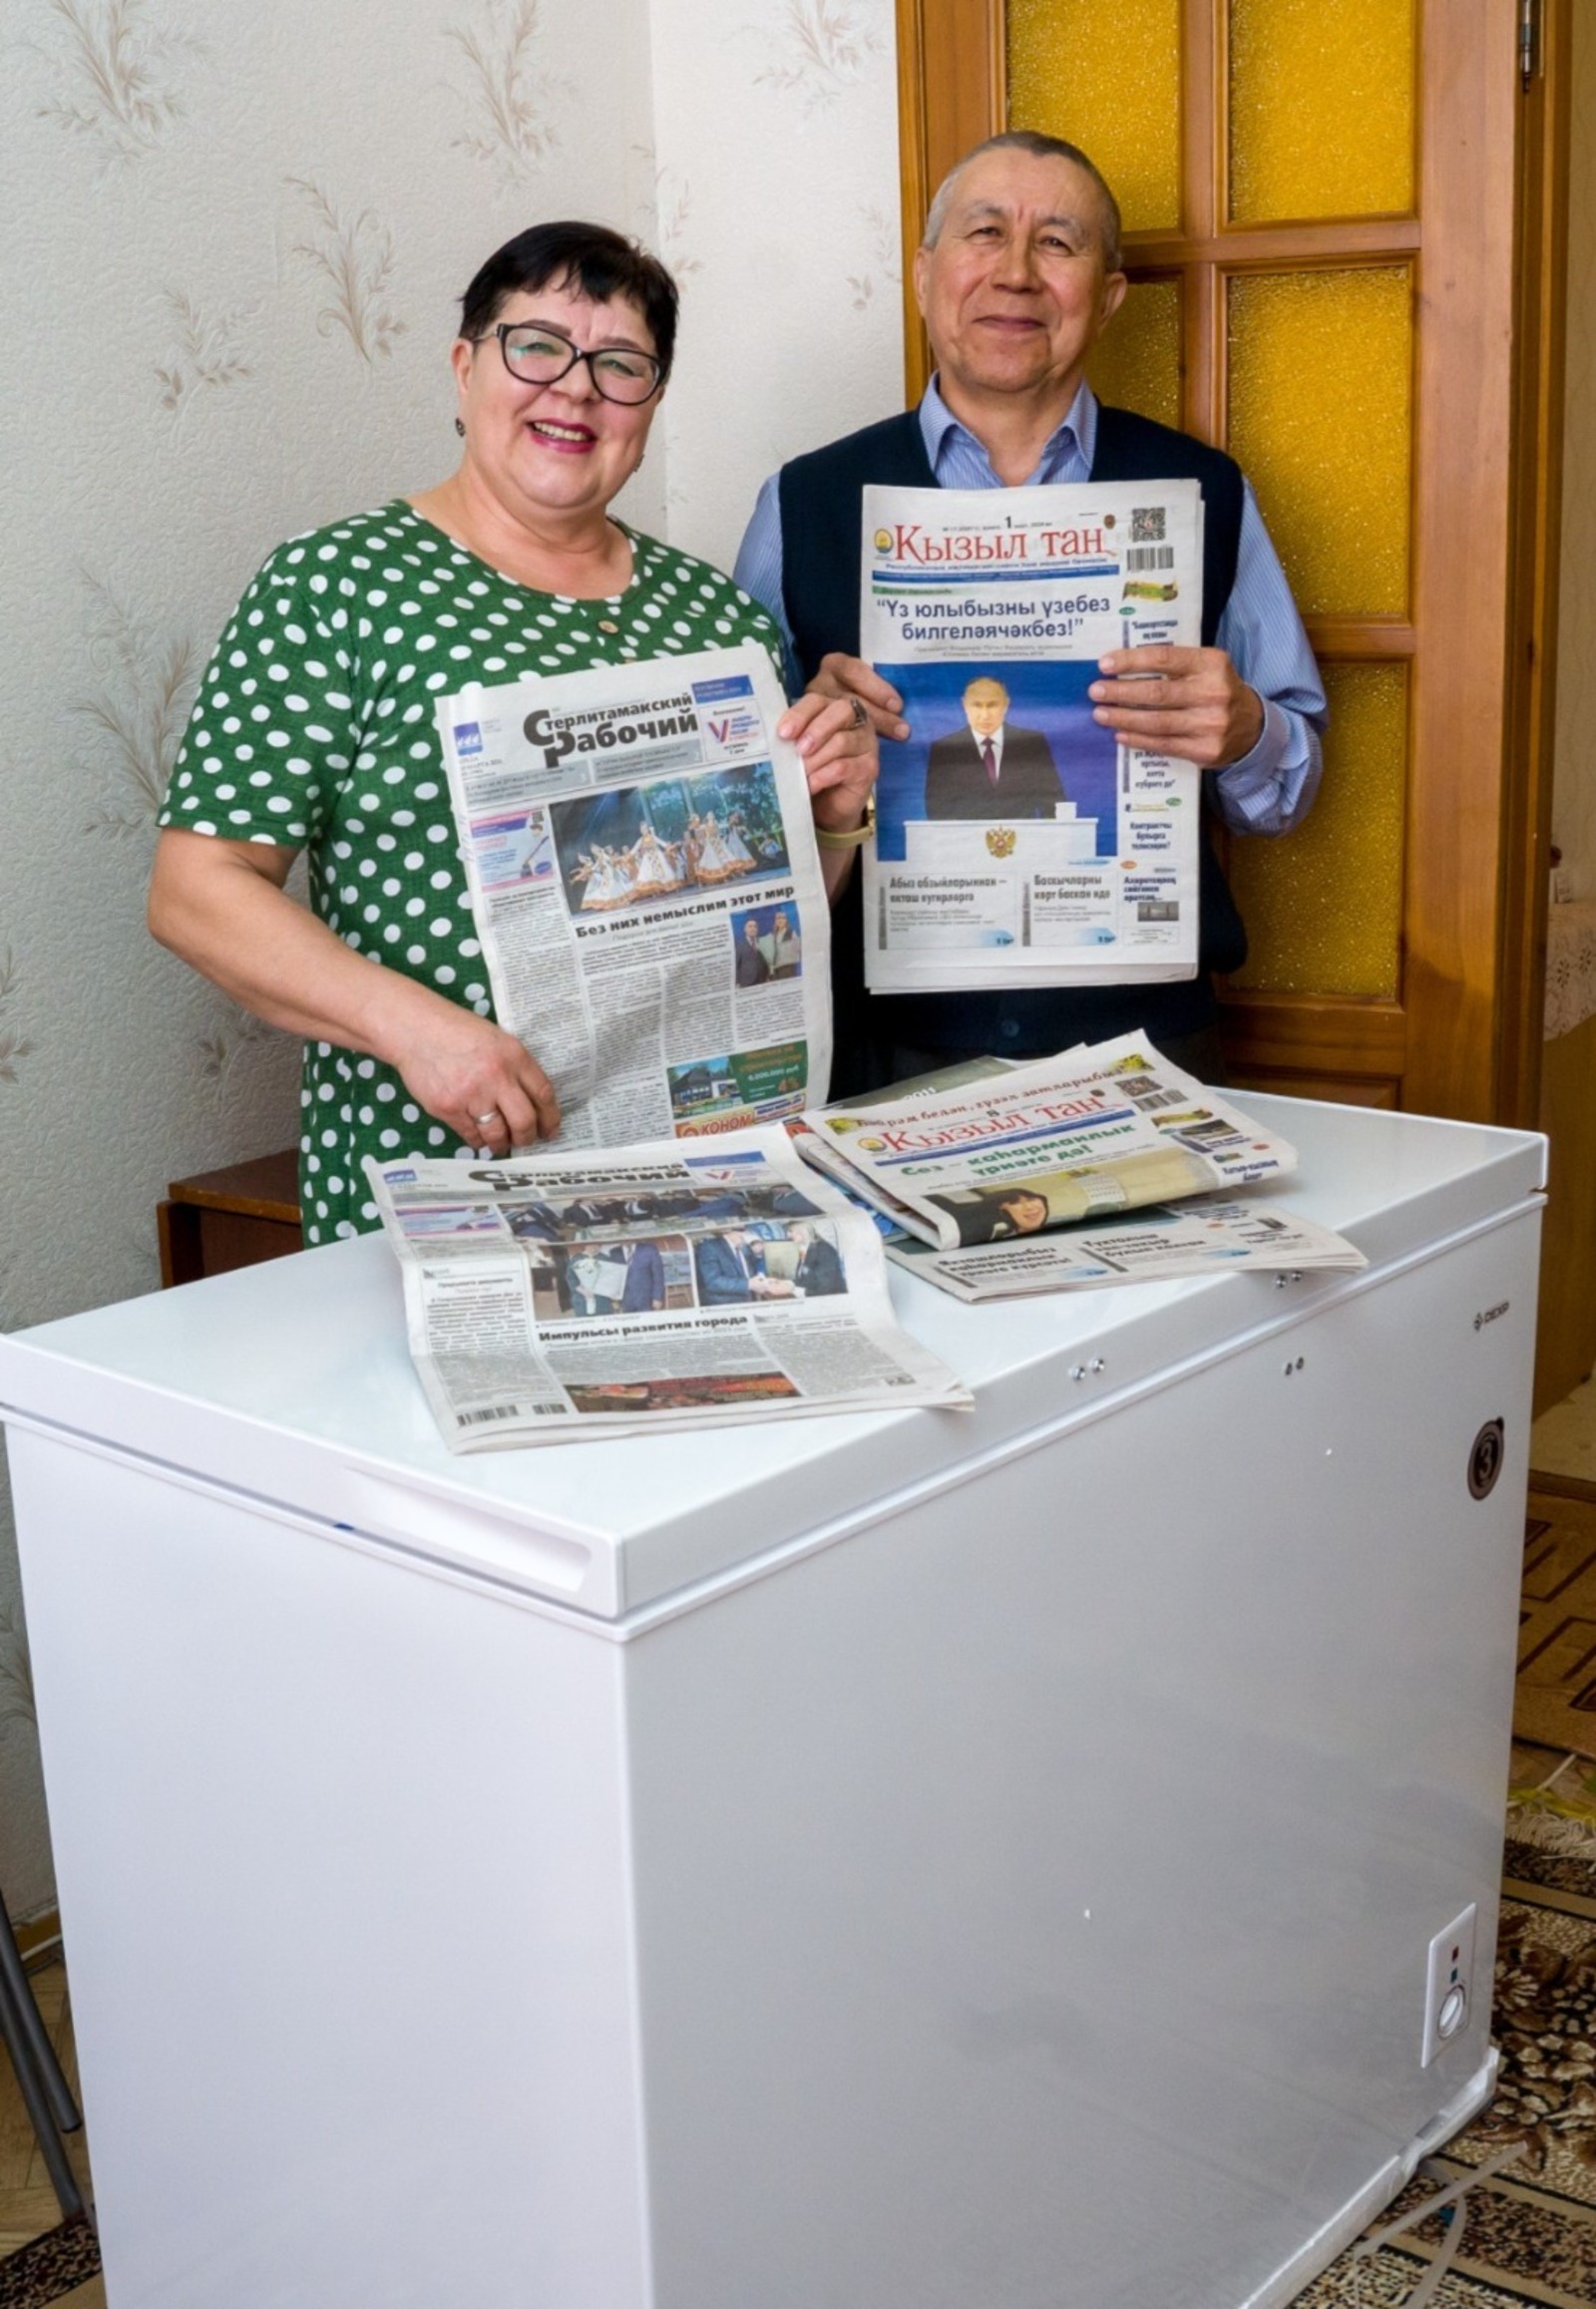 https://srgazeta.ru/ Семья Курбангуловых с любимыми газетами и выигранным призом